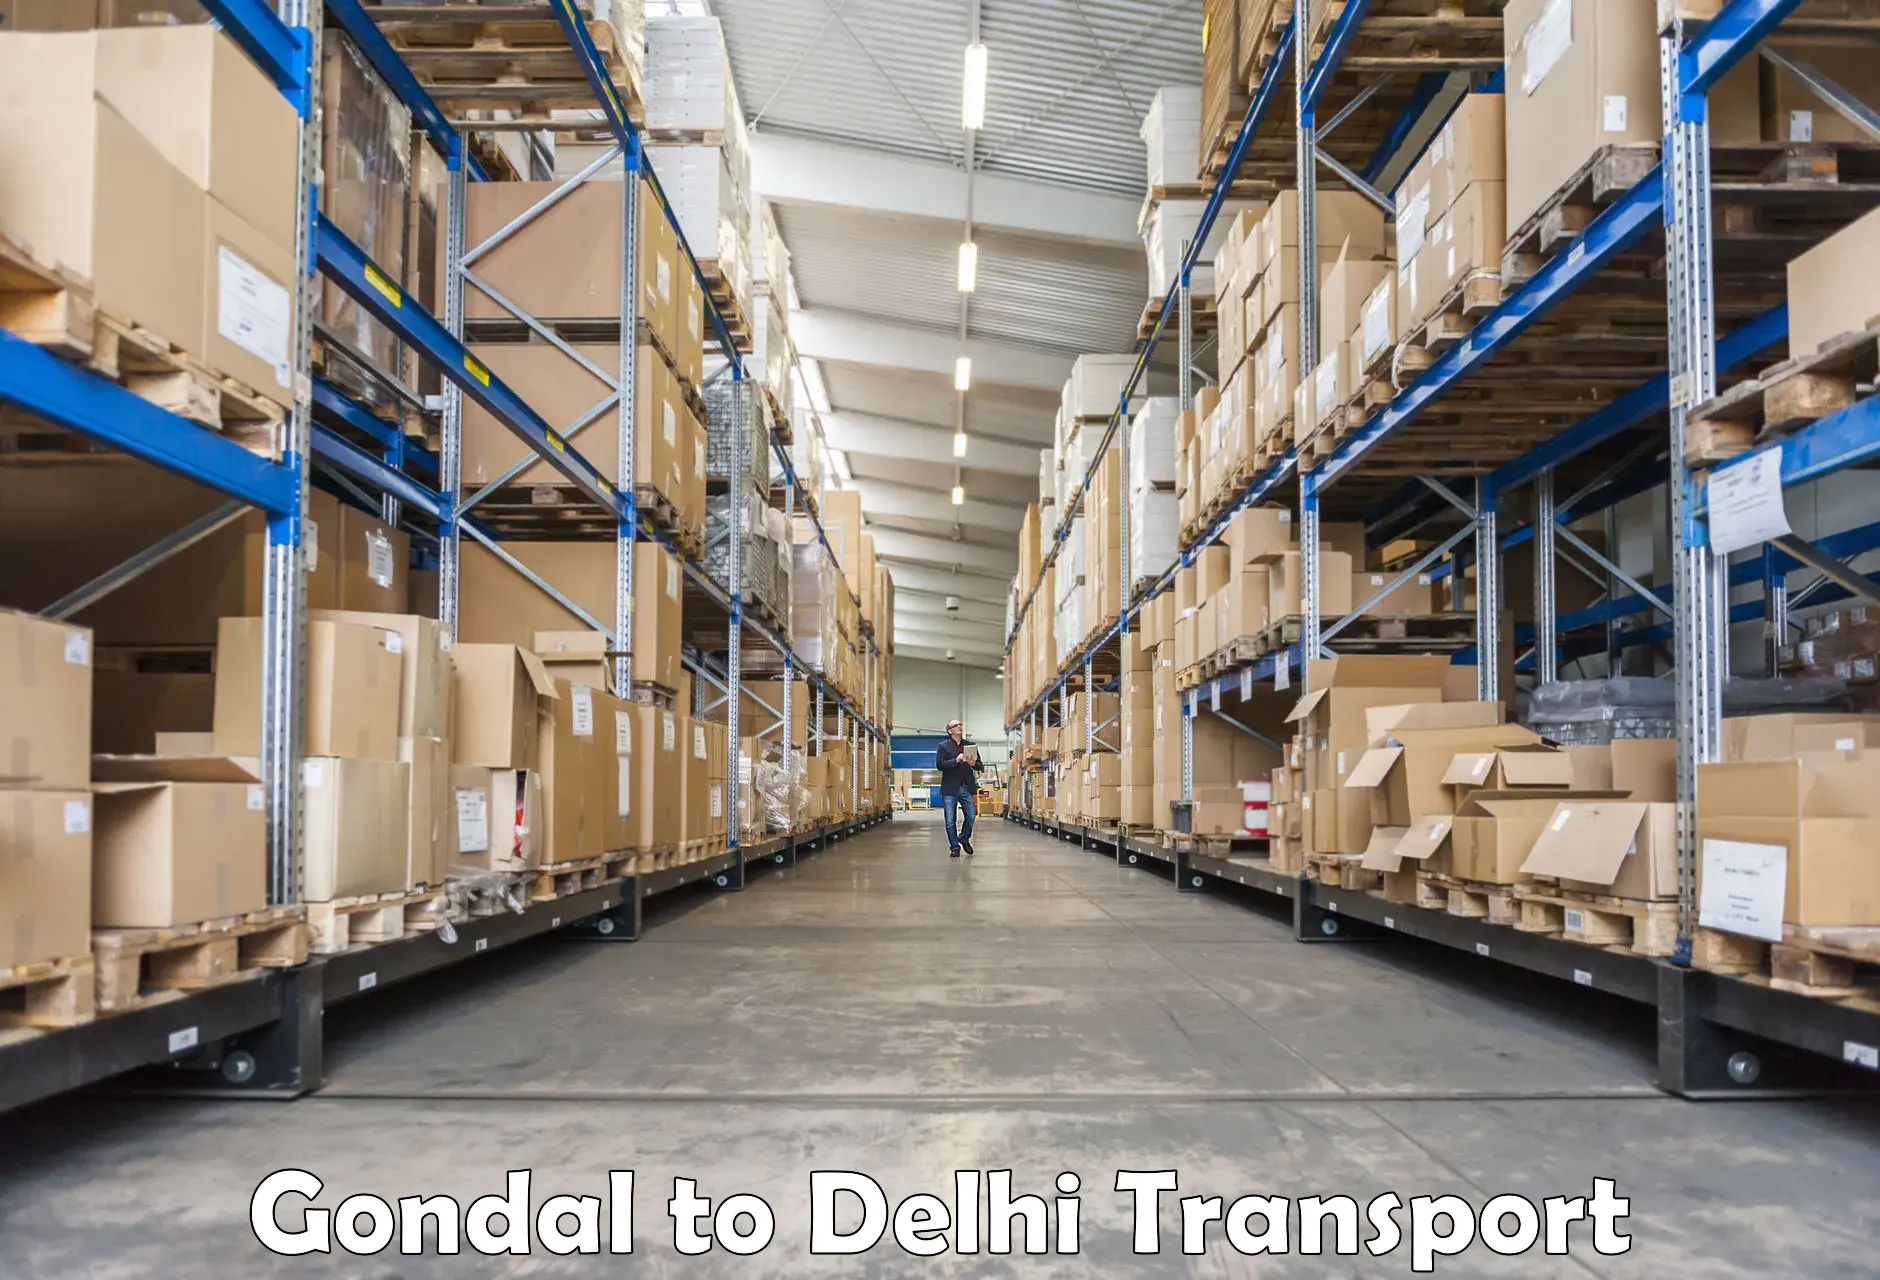 Commercial transport service Gondal to Delhi